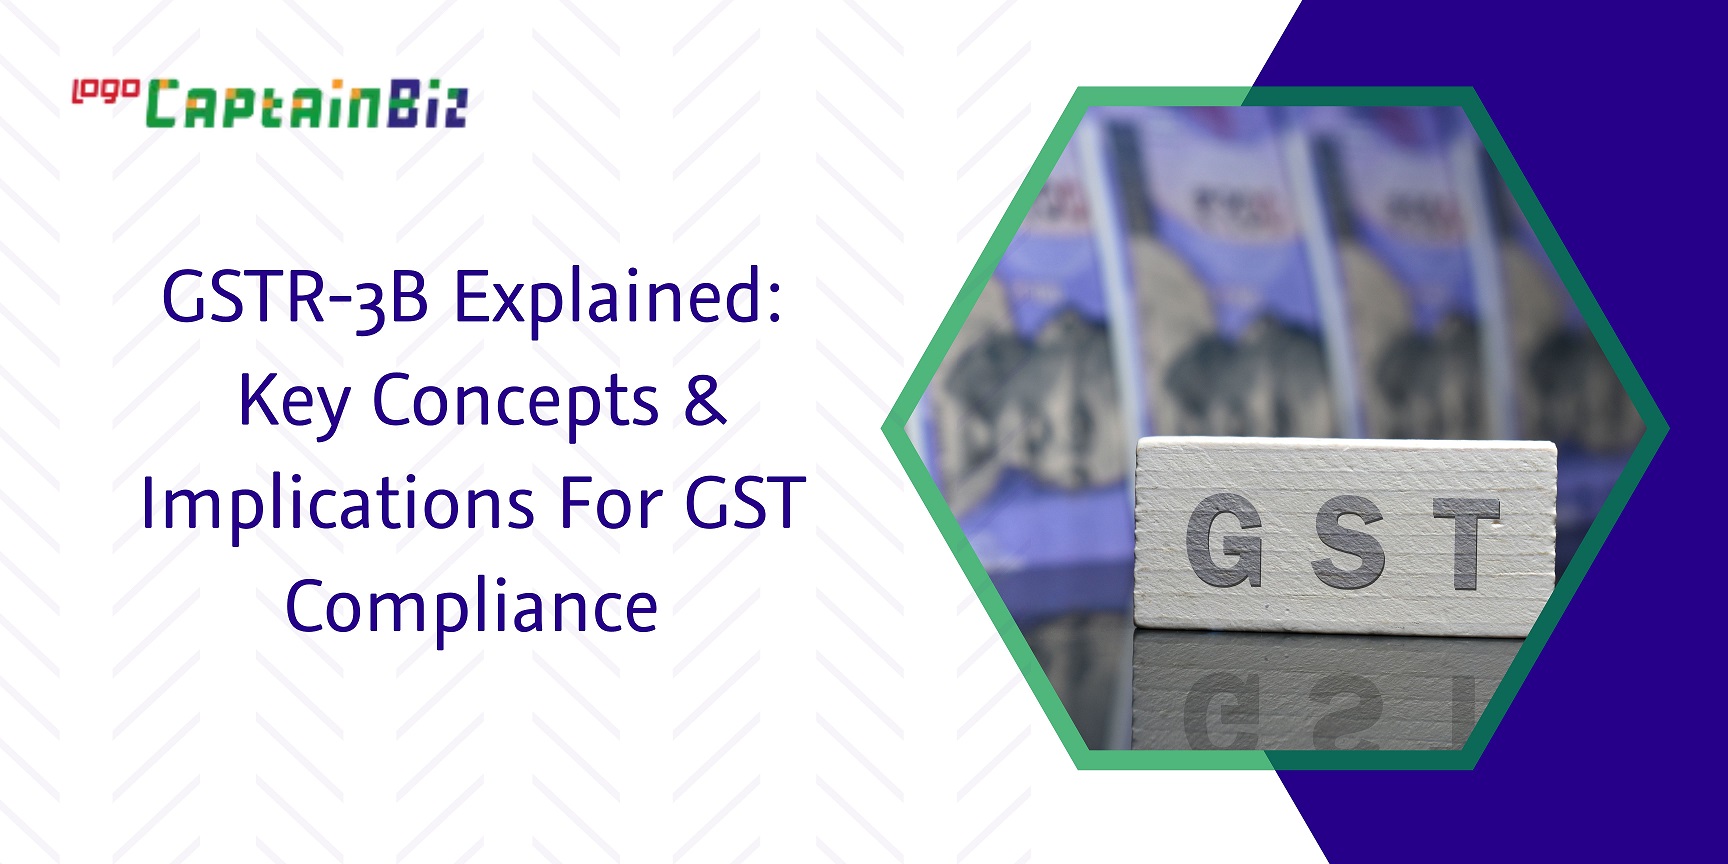 CaptainBiz: gstr-3b explained key concepts & implications for gst compliance